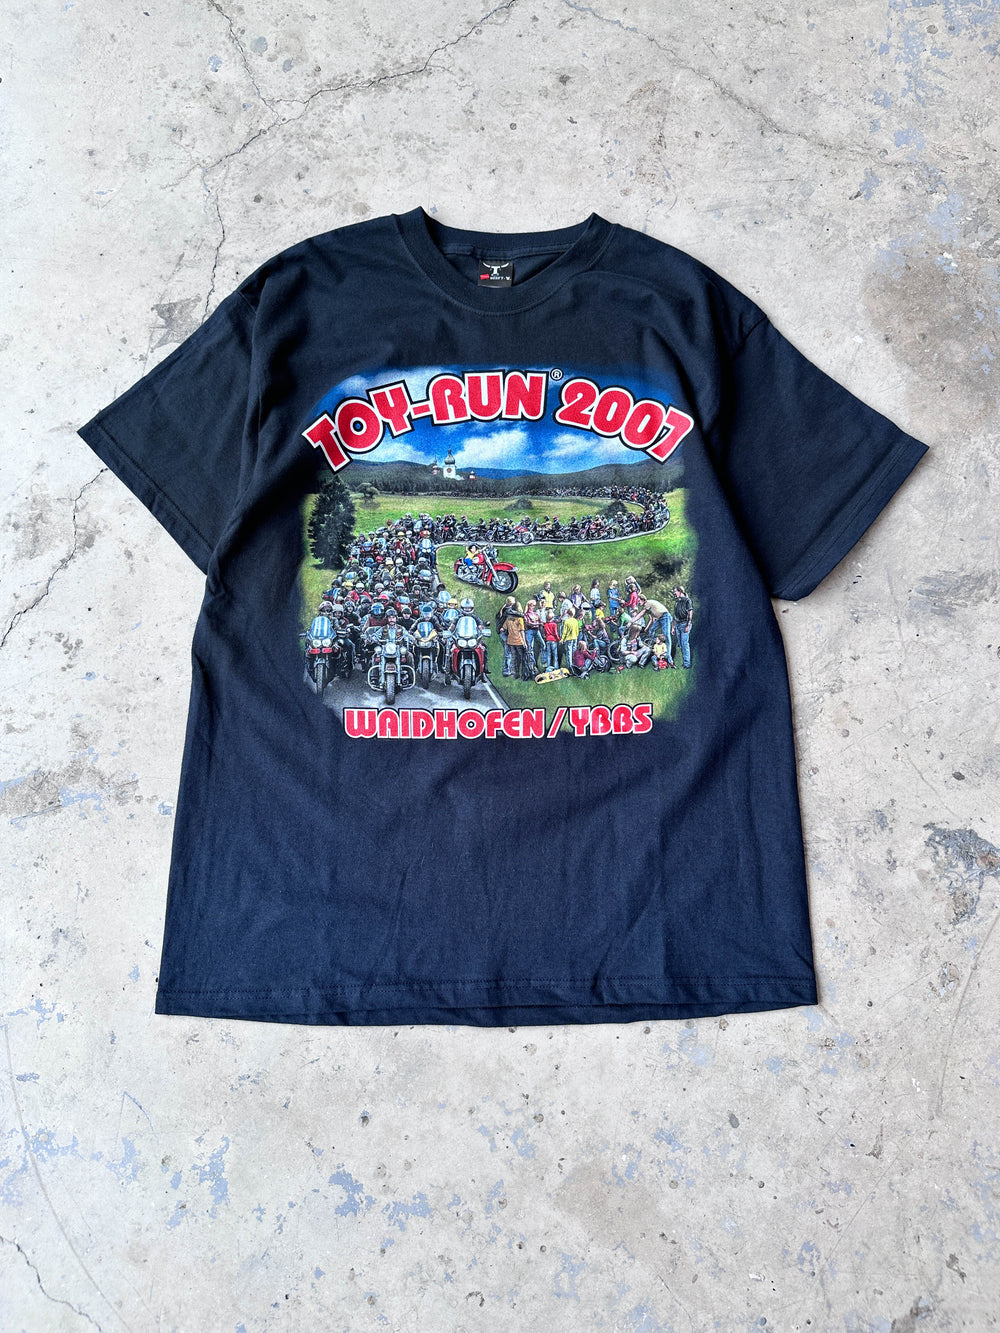 Toy-Run Waidhofen 2007 vintage t-shirt